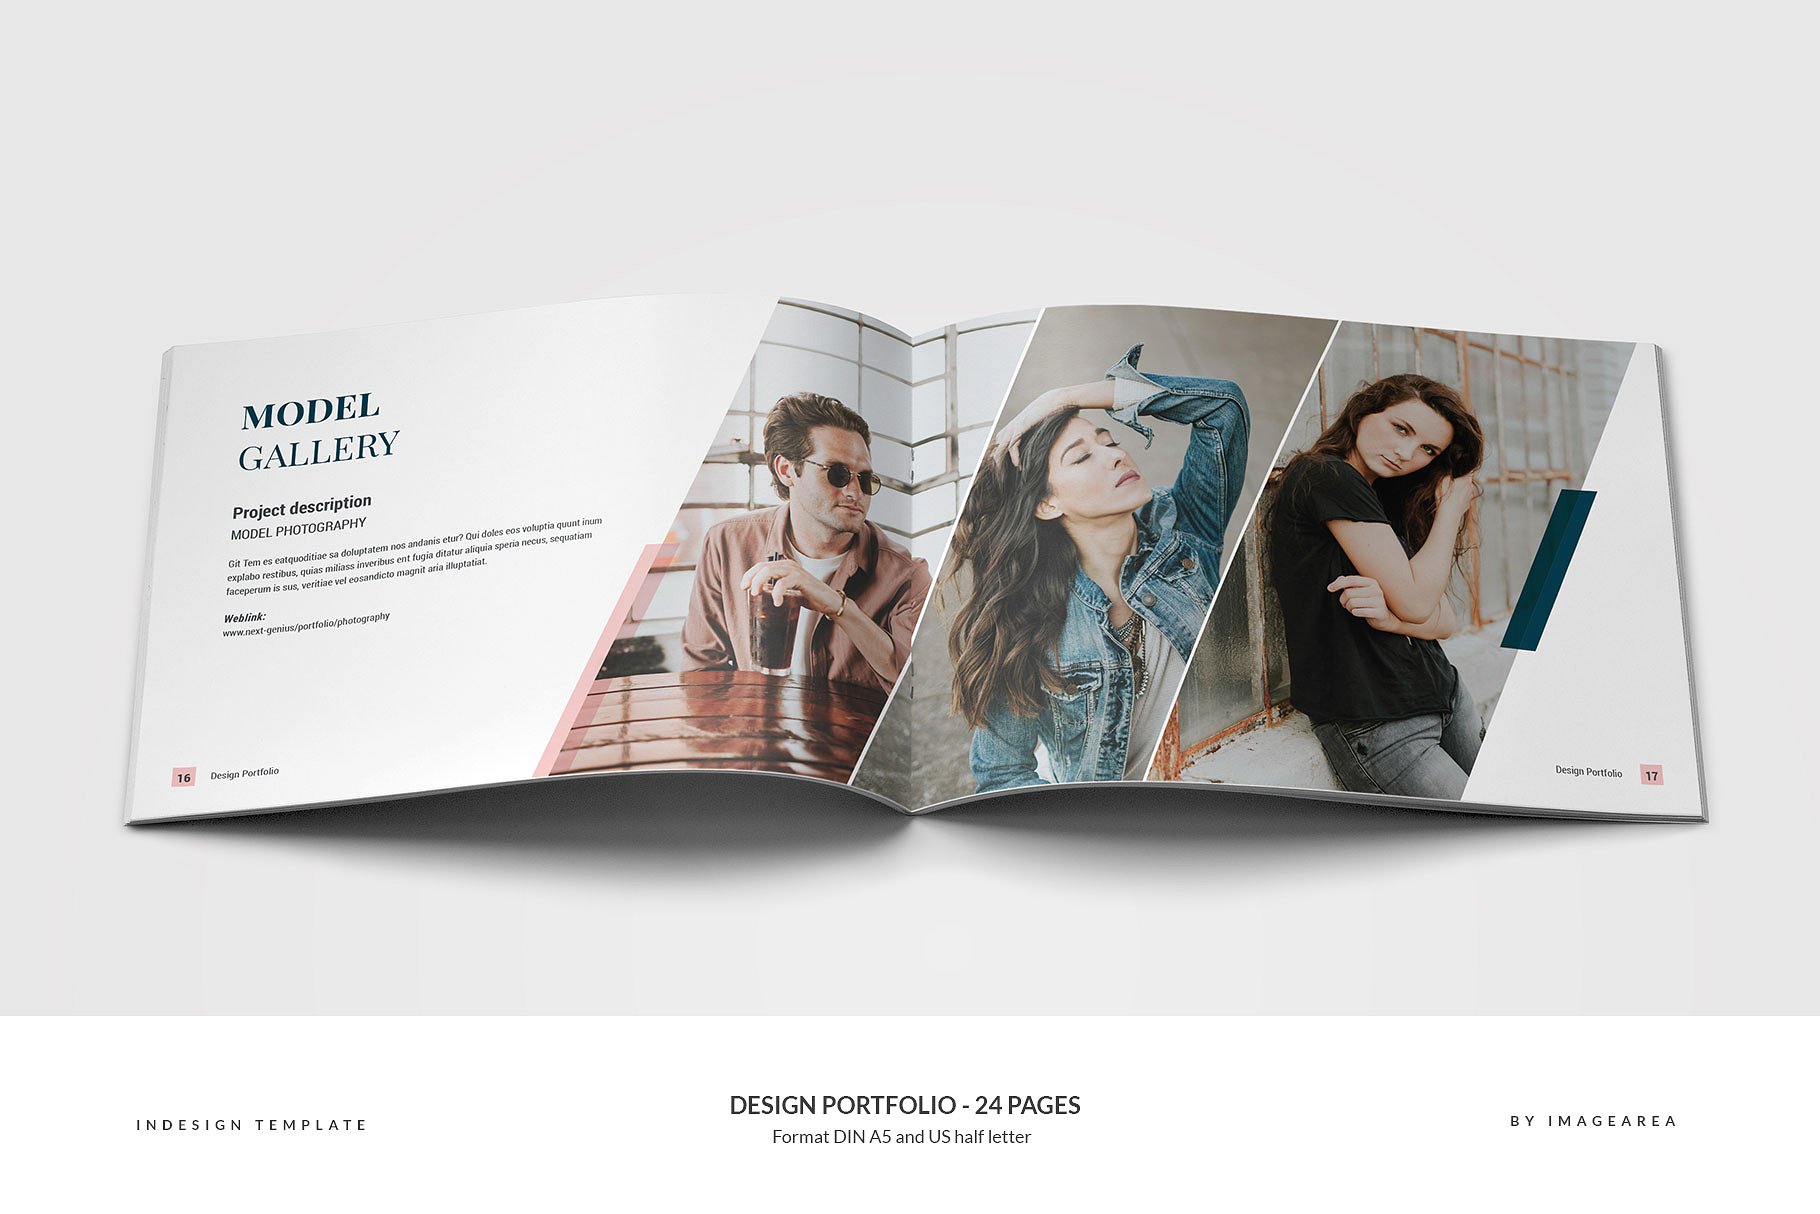 时尚简约企业画册模板 Design Portfolio – 24 Pages插图(8)